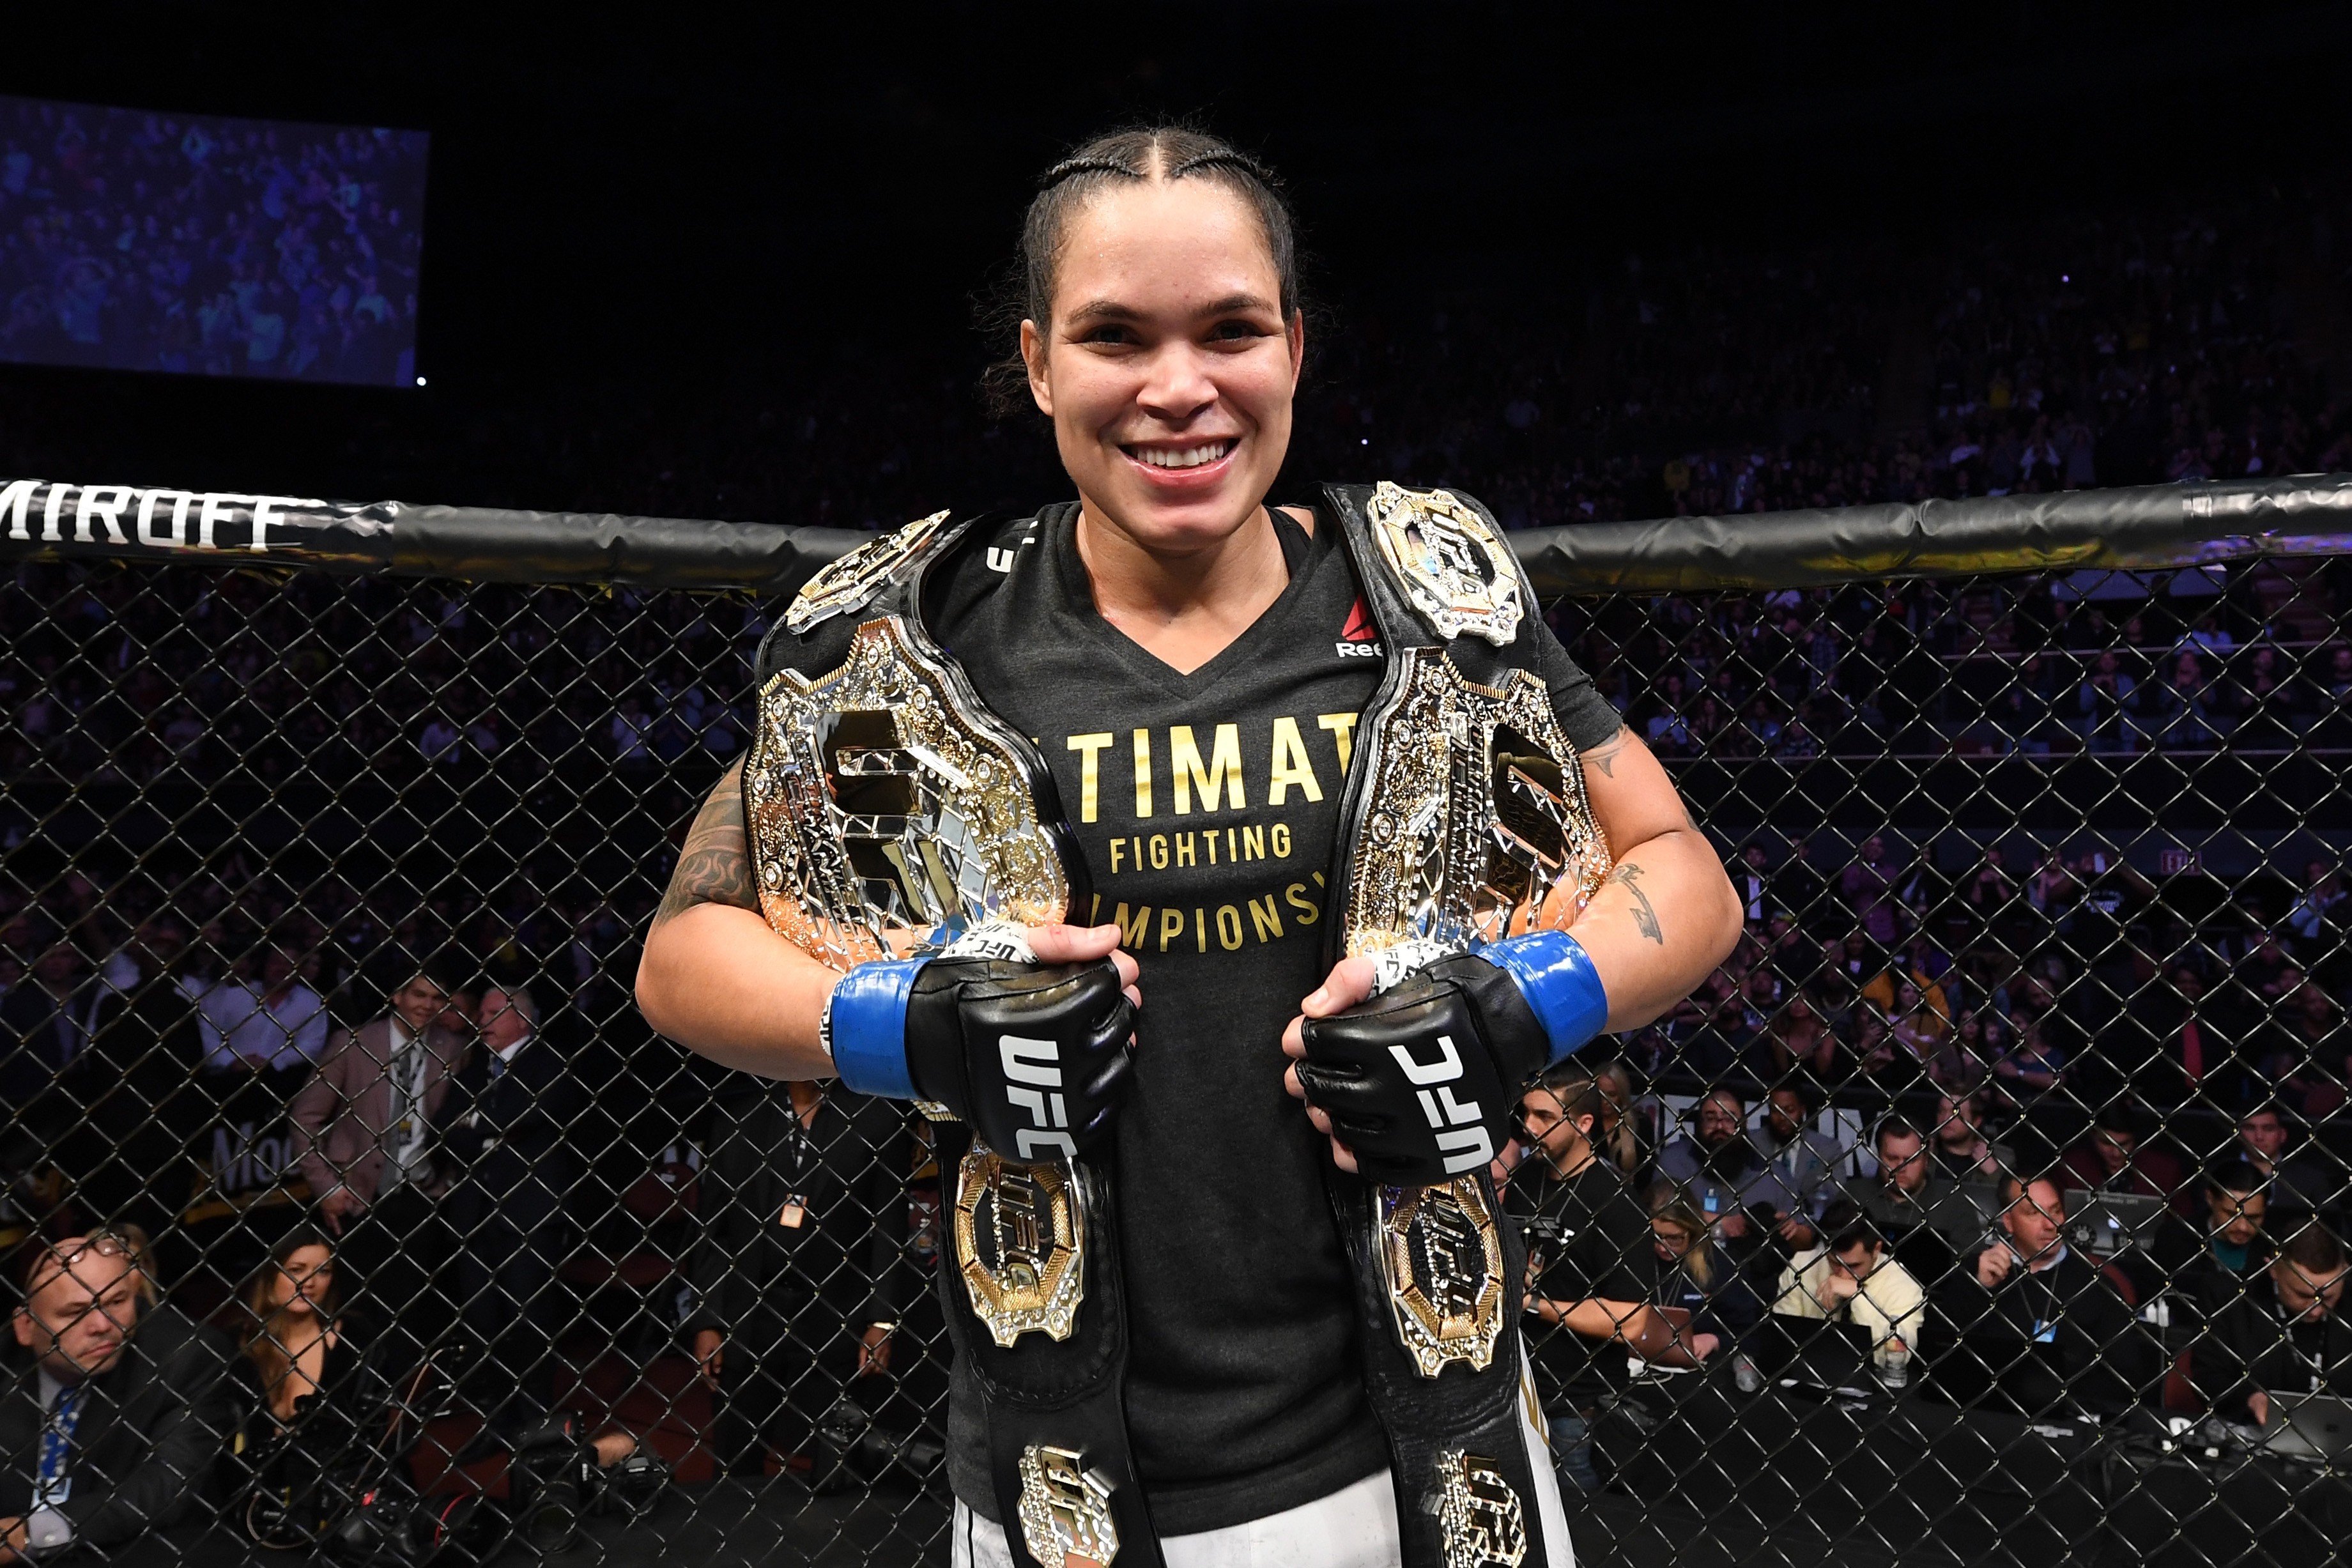 Amanda Nunes detém dois cinturões no UFC, e é o destaque brasileiro na organização (Foto: Getty Images)